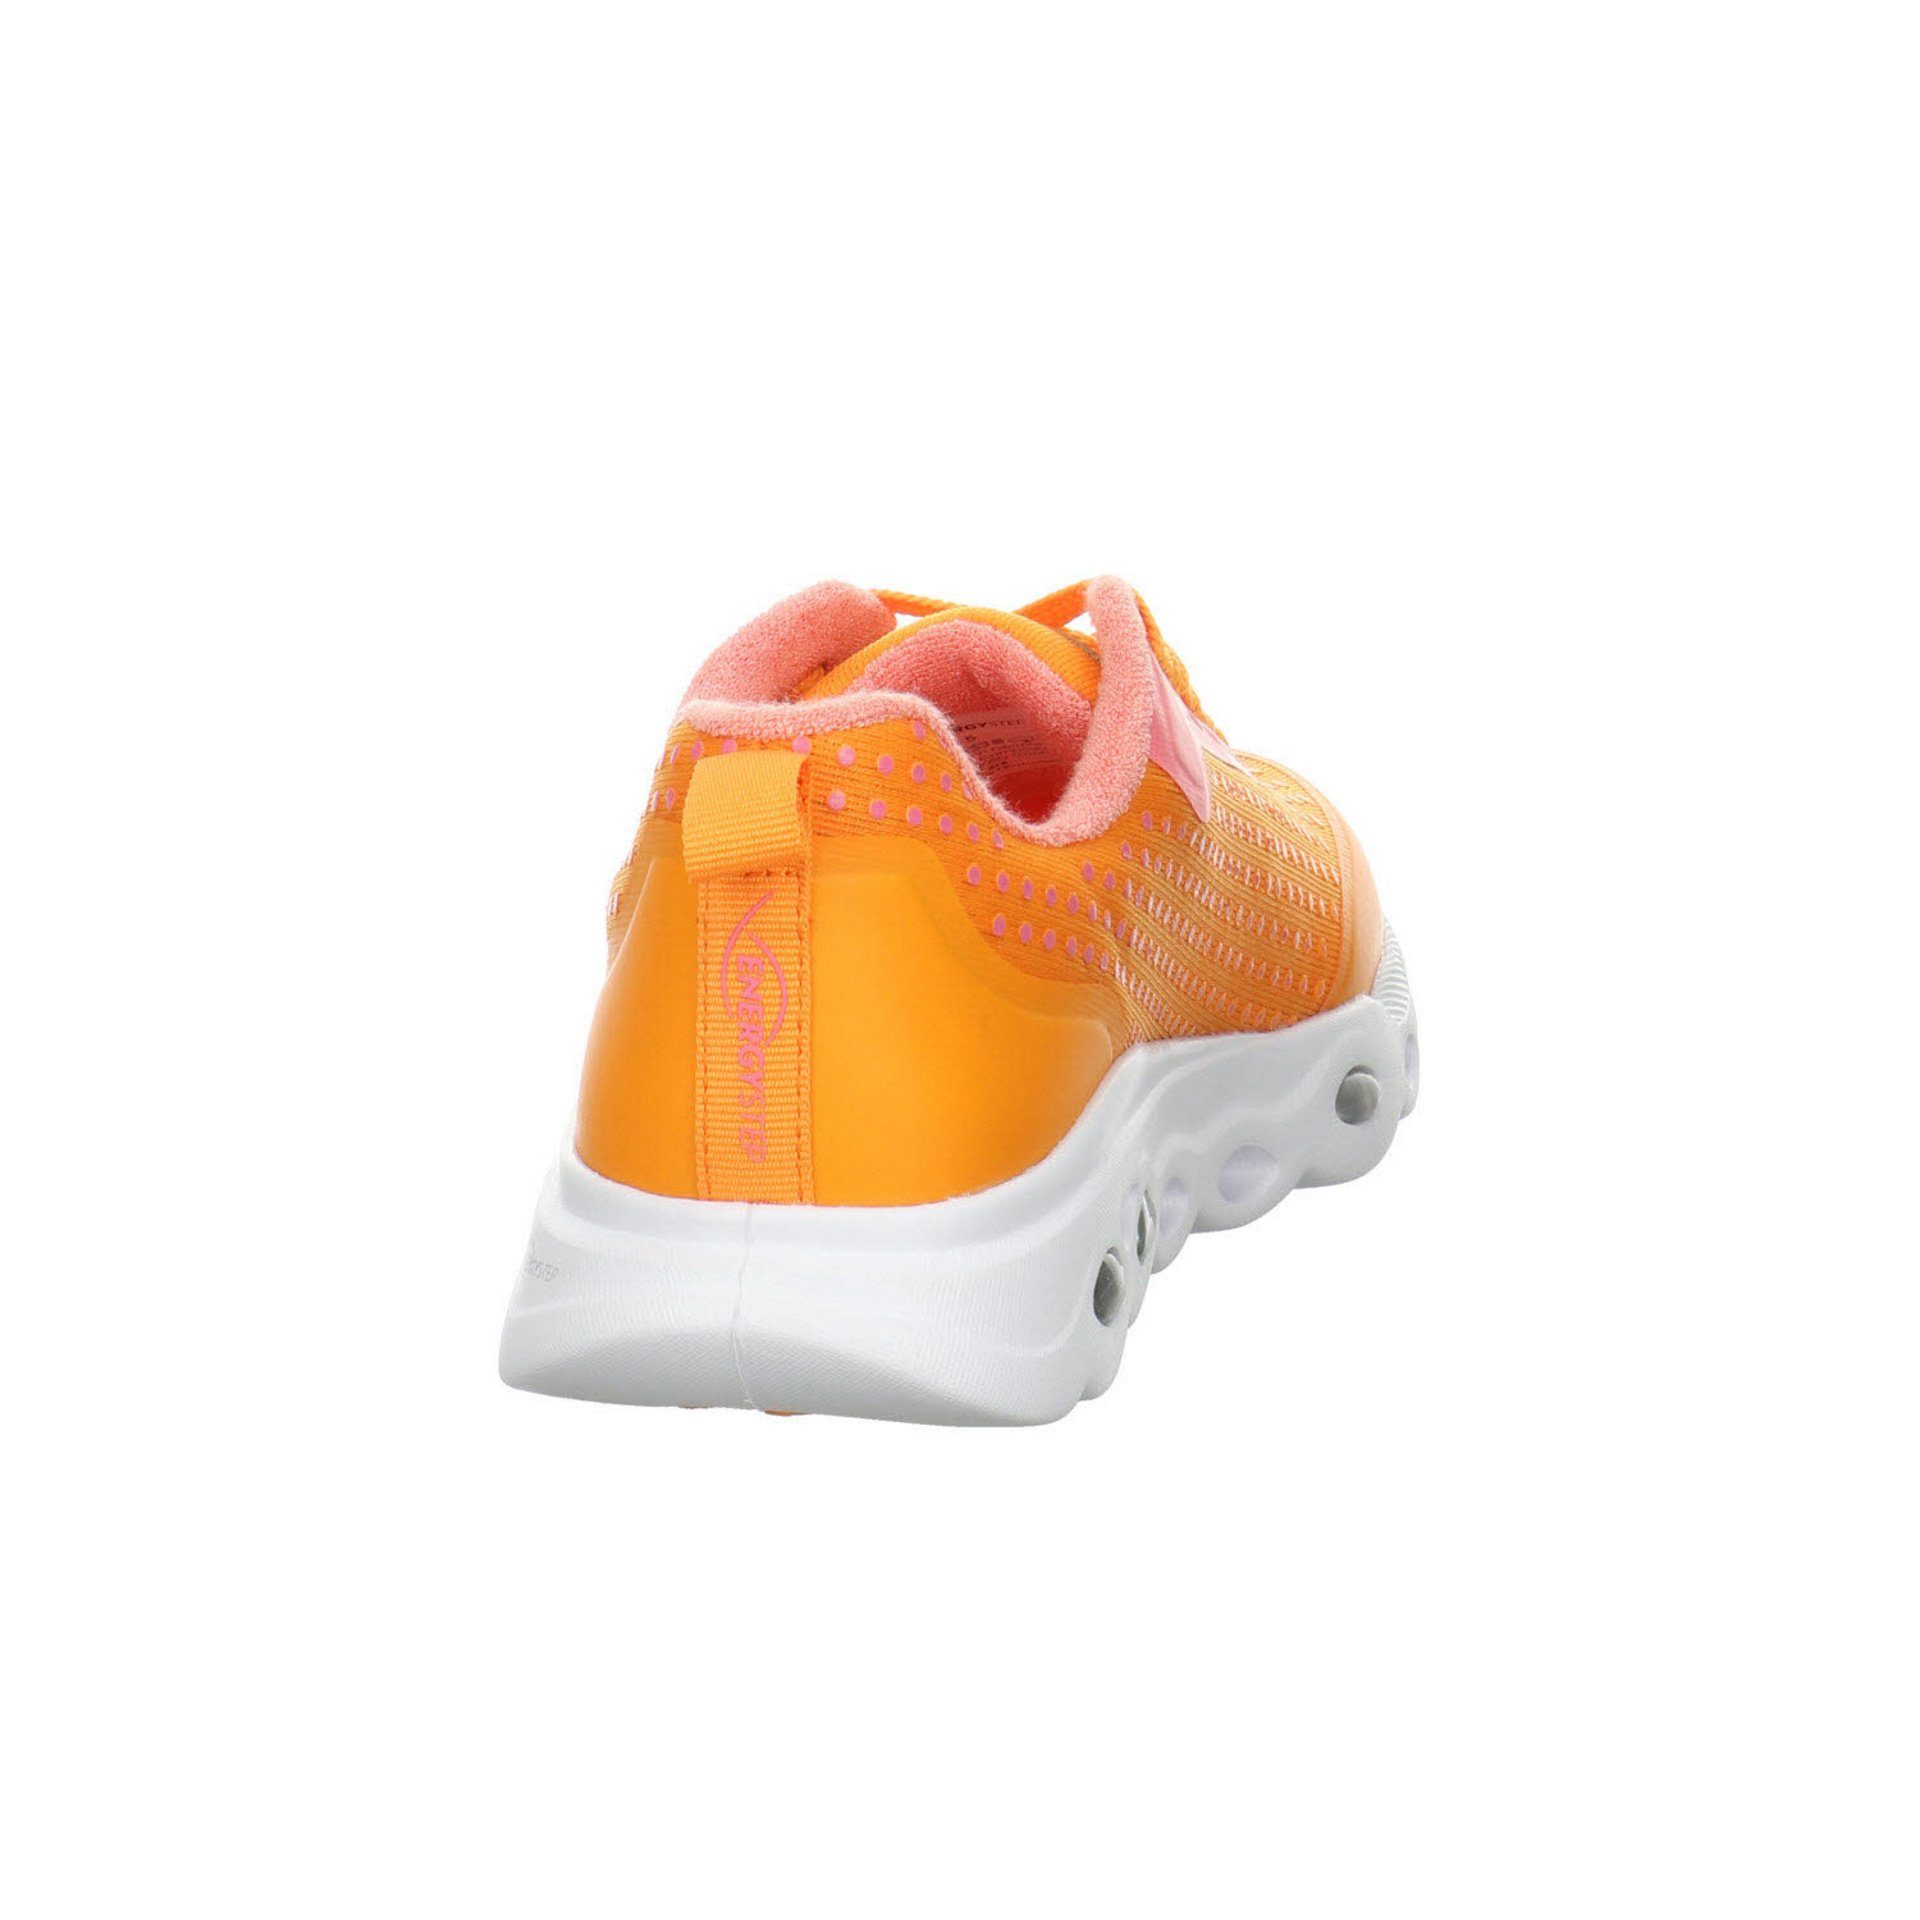 Ara Damen Sneaker Schuhe Malibu Schnürschuh Sneaker orange Synthetikkombination